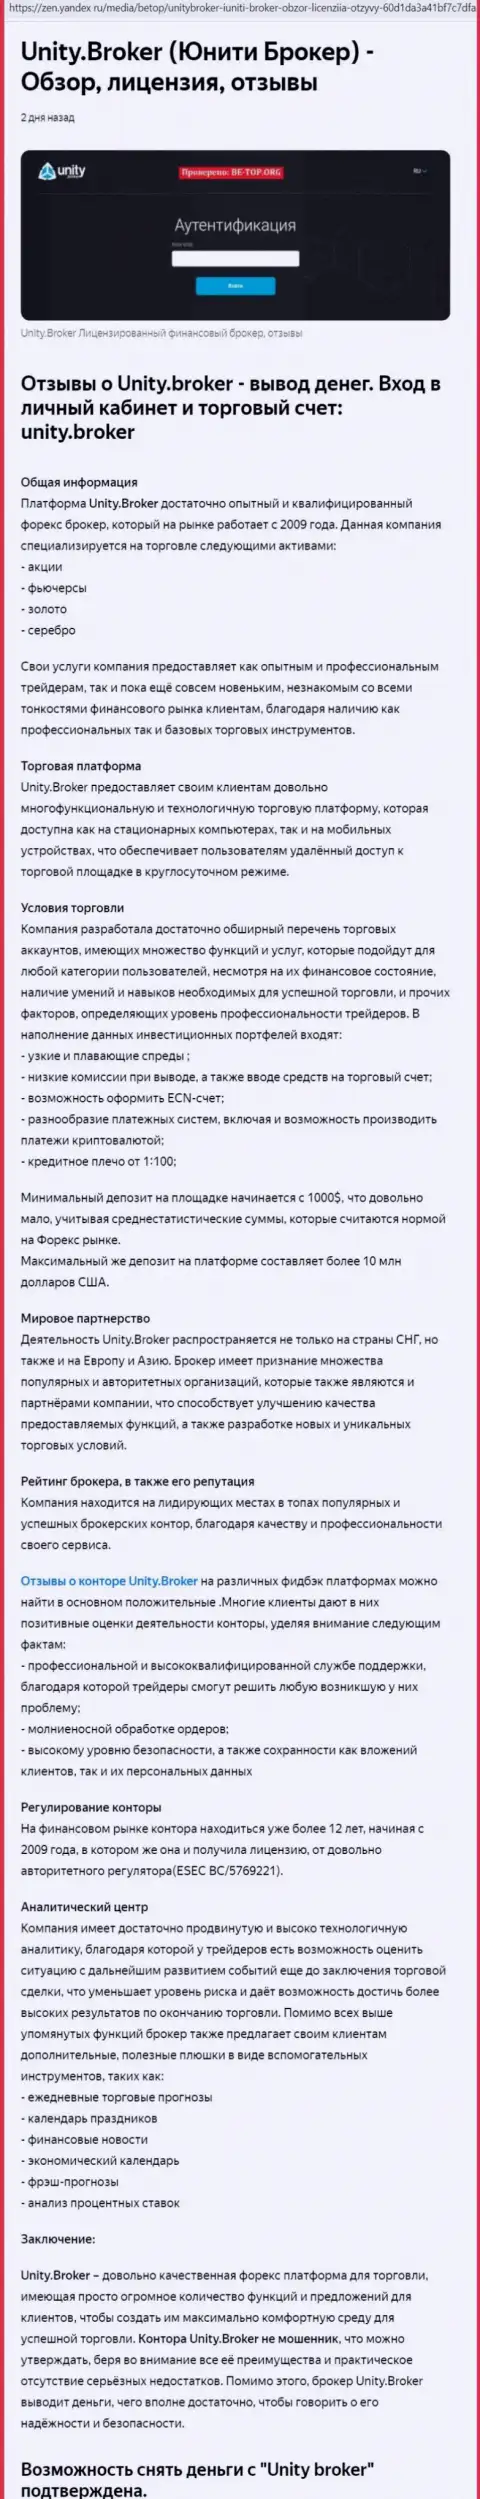 Обзор деятельности ФОРЕКС дилингового центра Юнити Брокер на сайте Yandex Zen